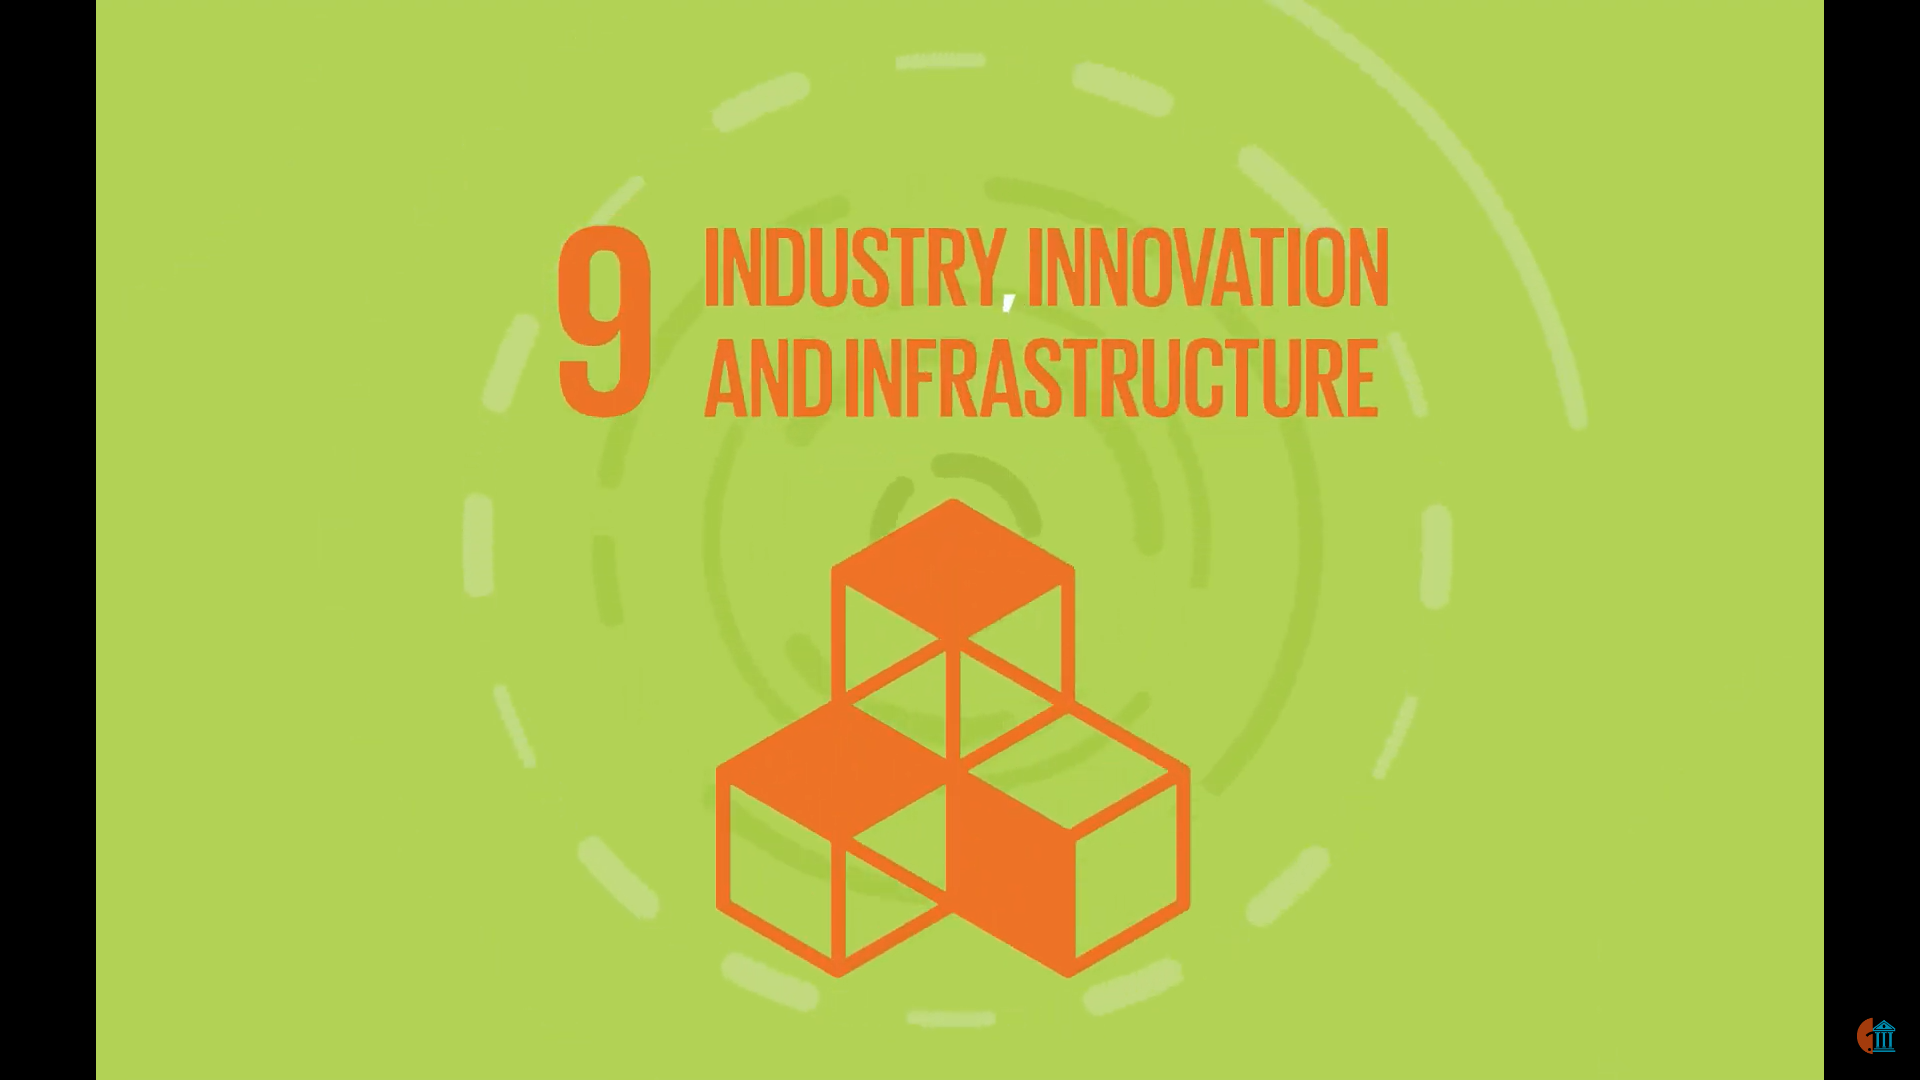 聯合國永續發展目標 9: 工業、創新與基礎設施 - 2